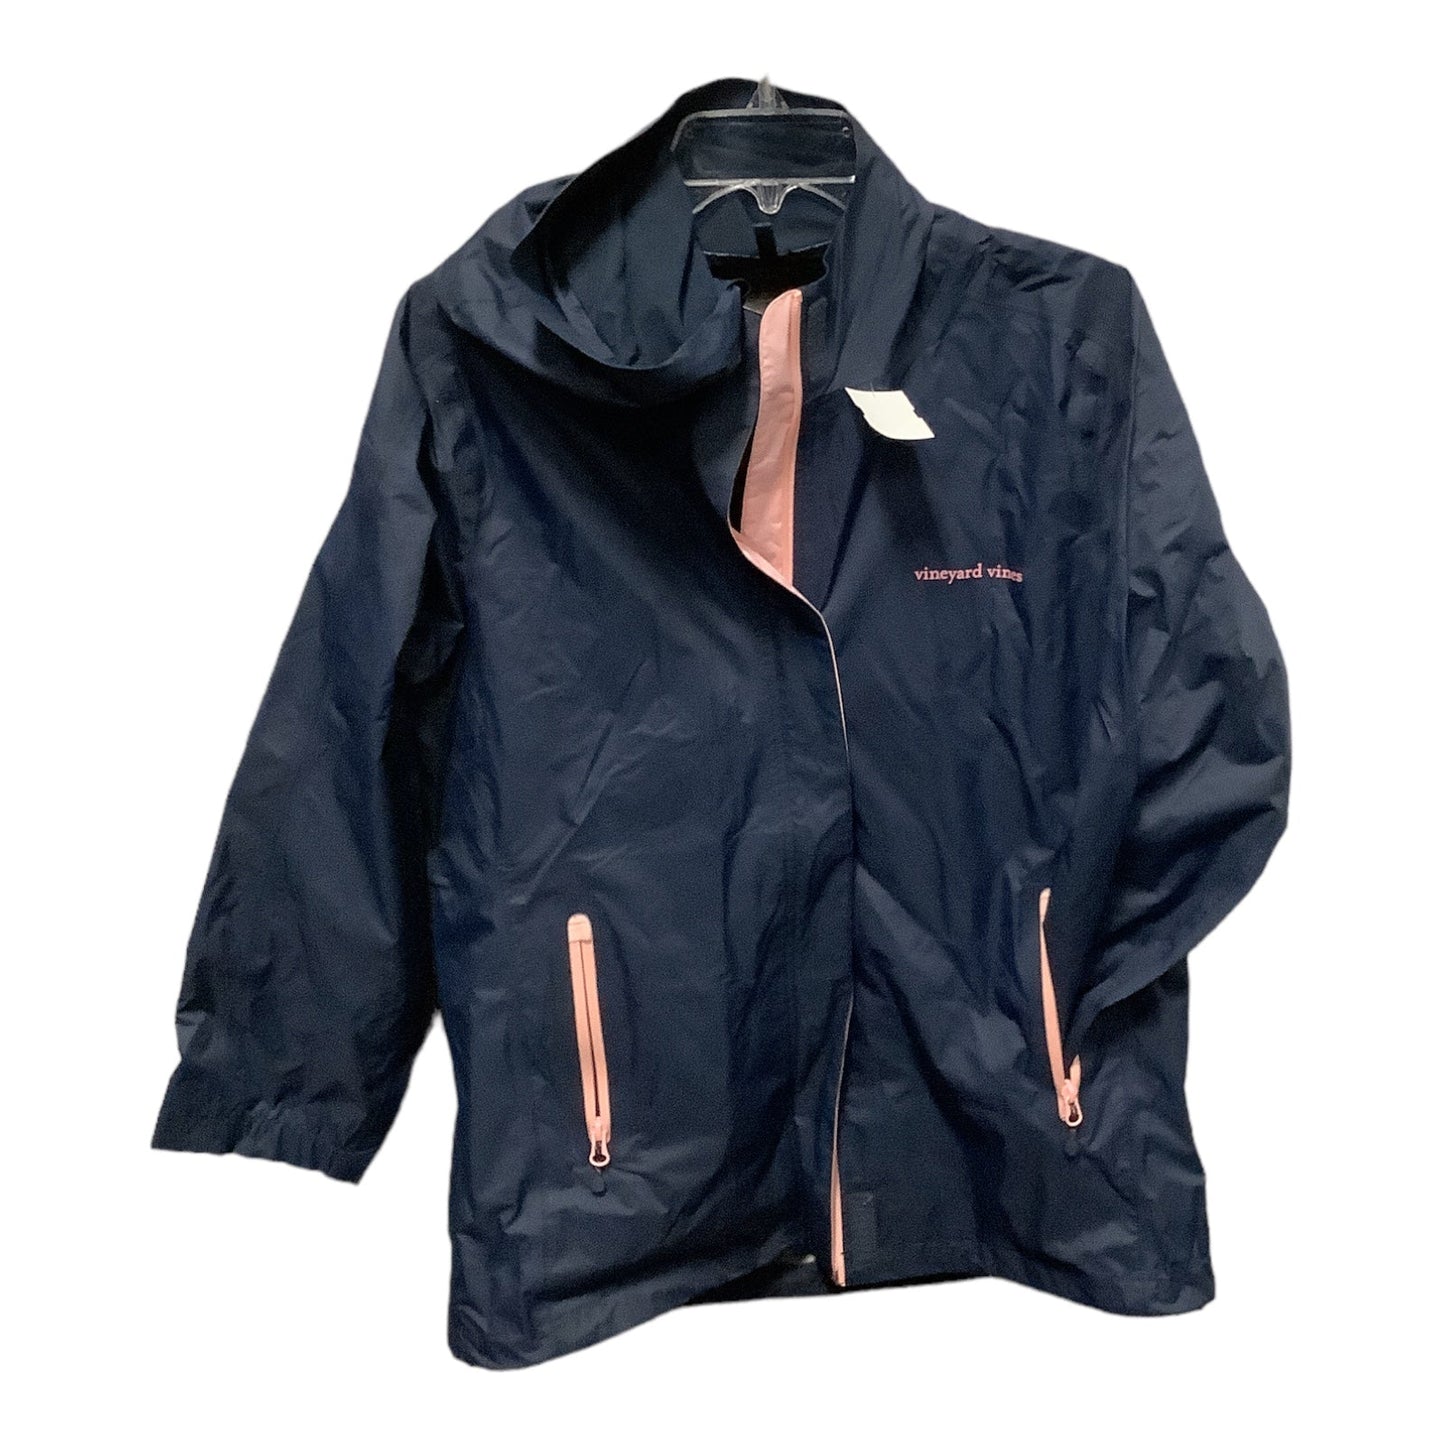 Jacket Windbreaker By Vineyard Vines  Size: M